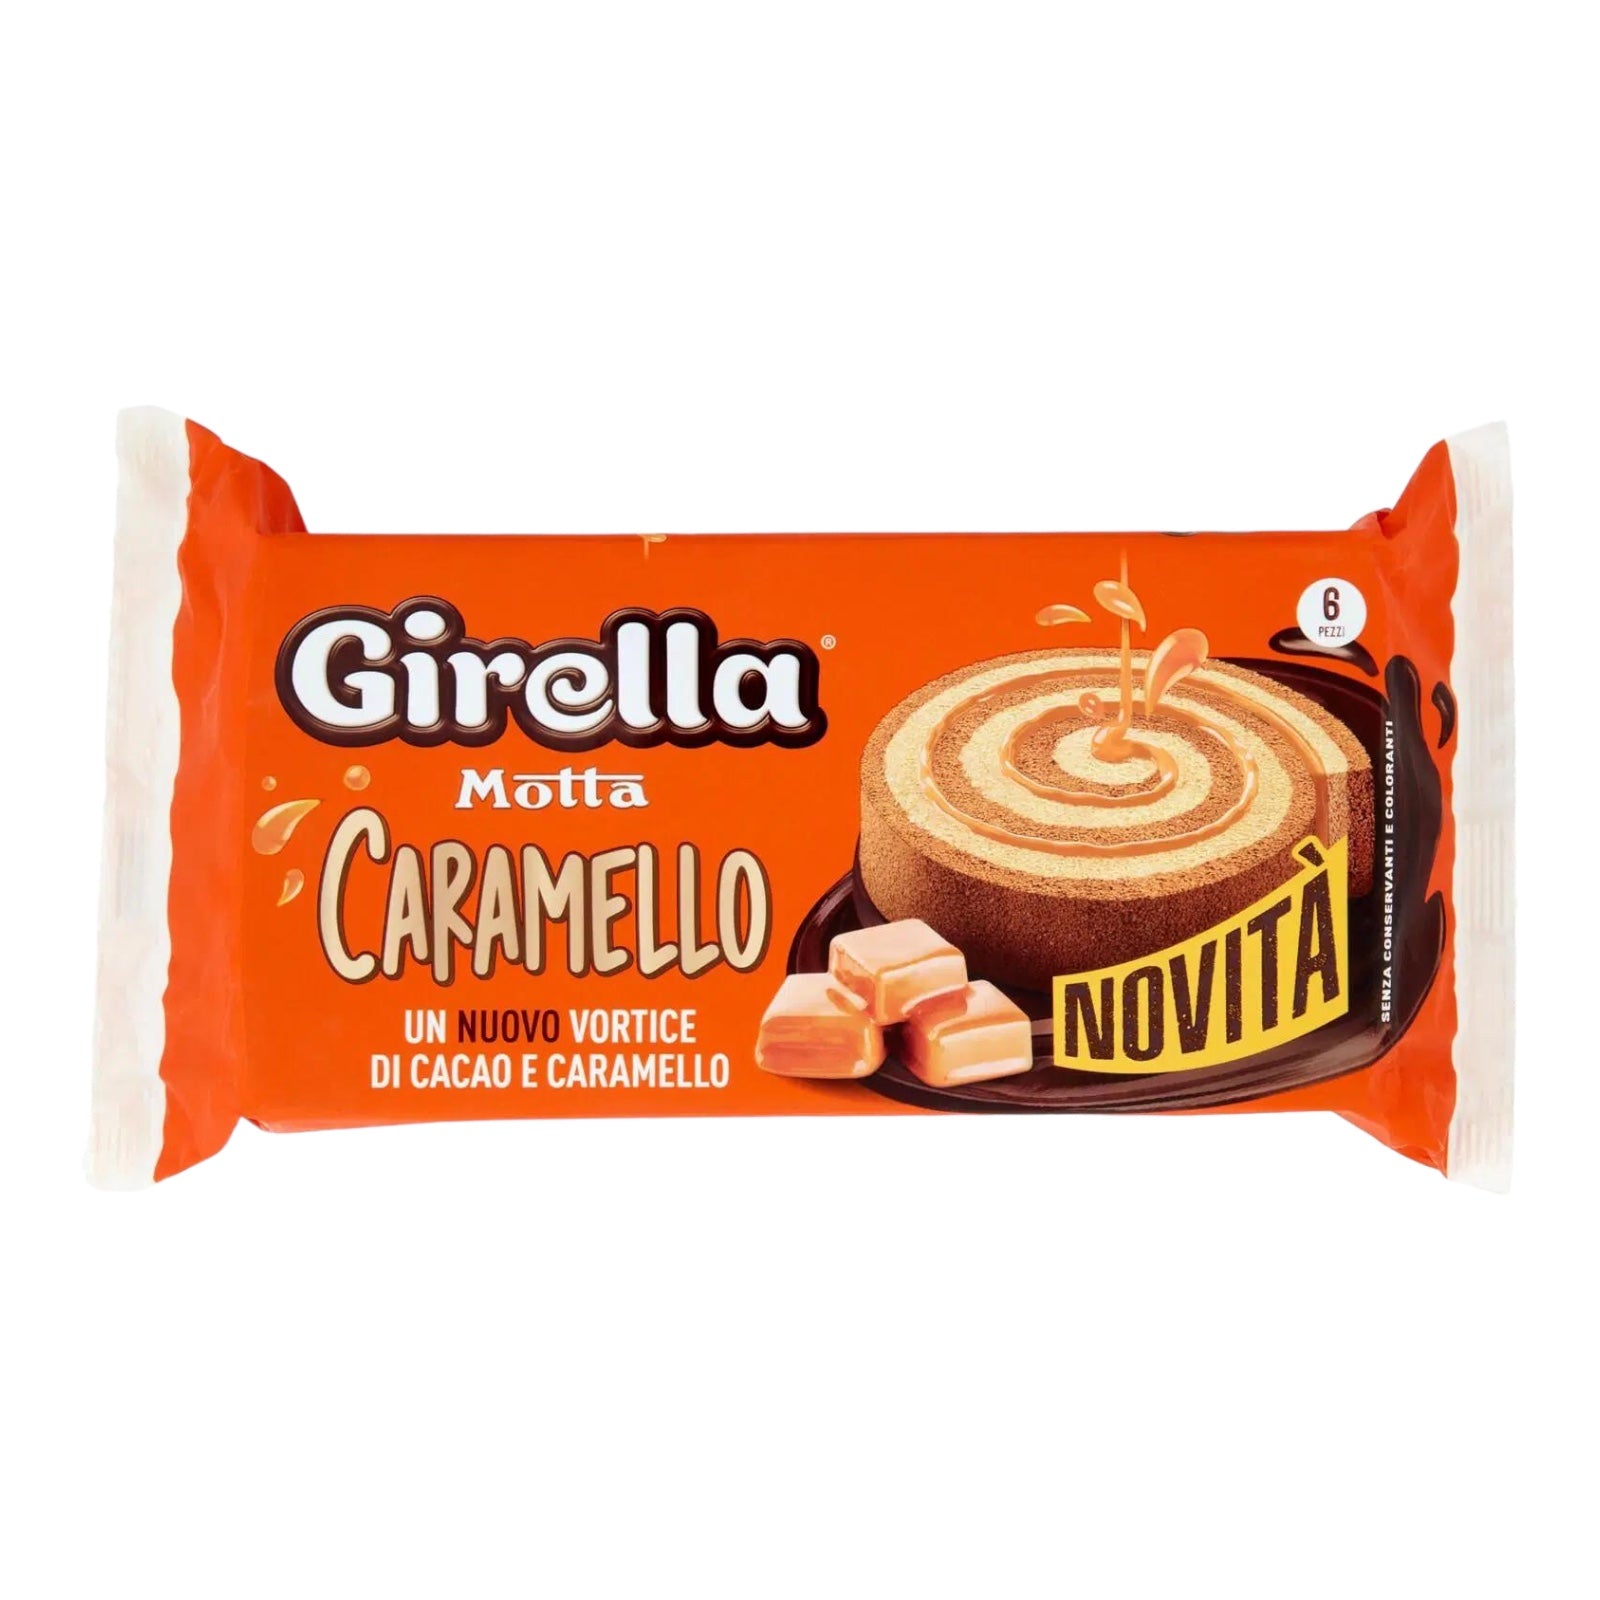 Motta Girella with Caramel 
6 pieces 210 gr